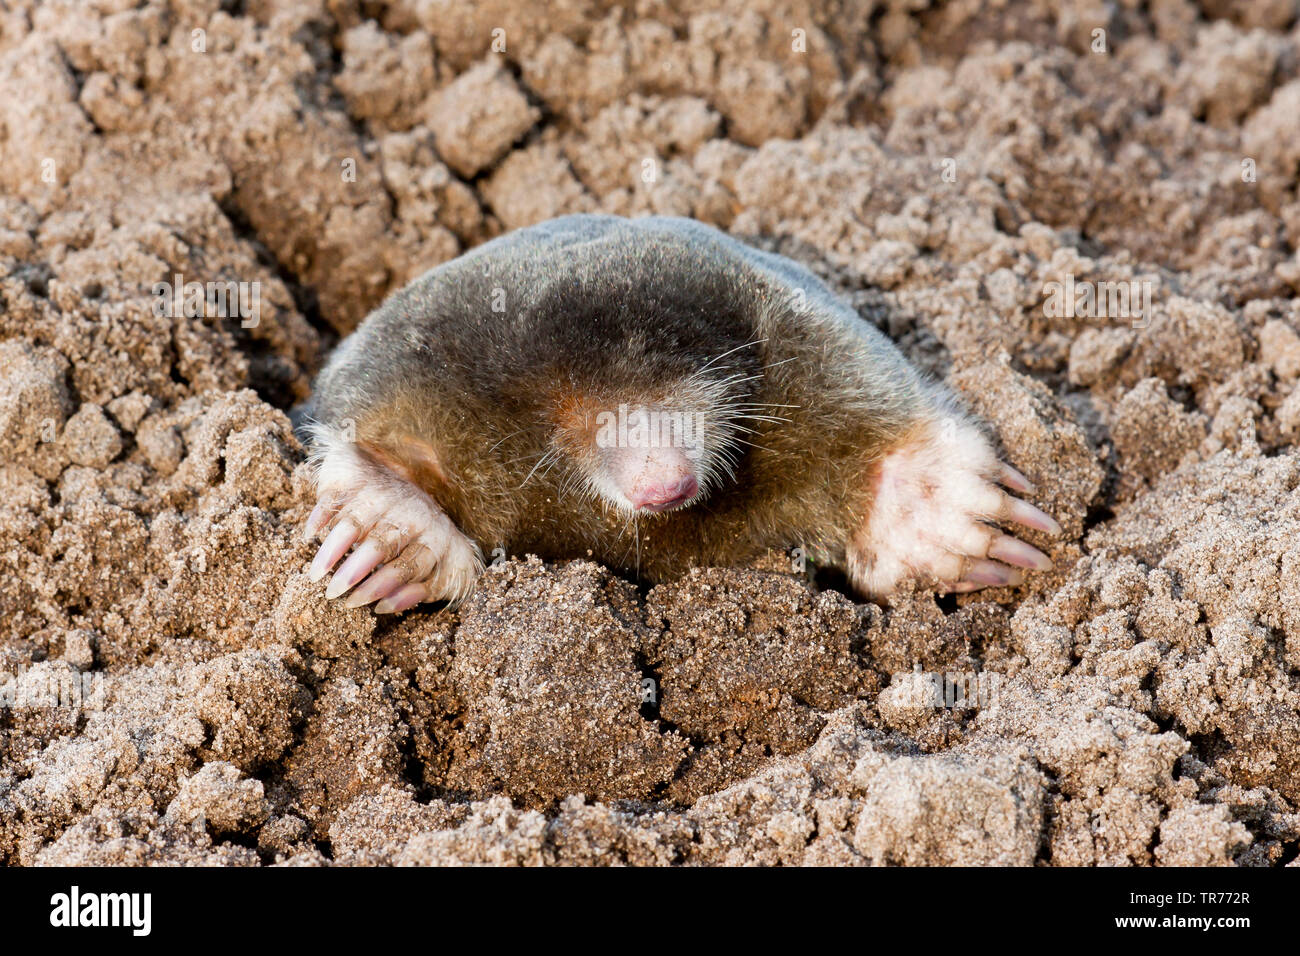 Unione mole, comune mole, Northern mole (Talpa europaea), sulla superficie, Paesi Bassi Foto Stock